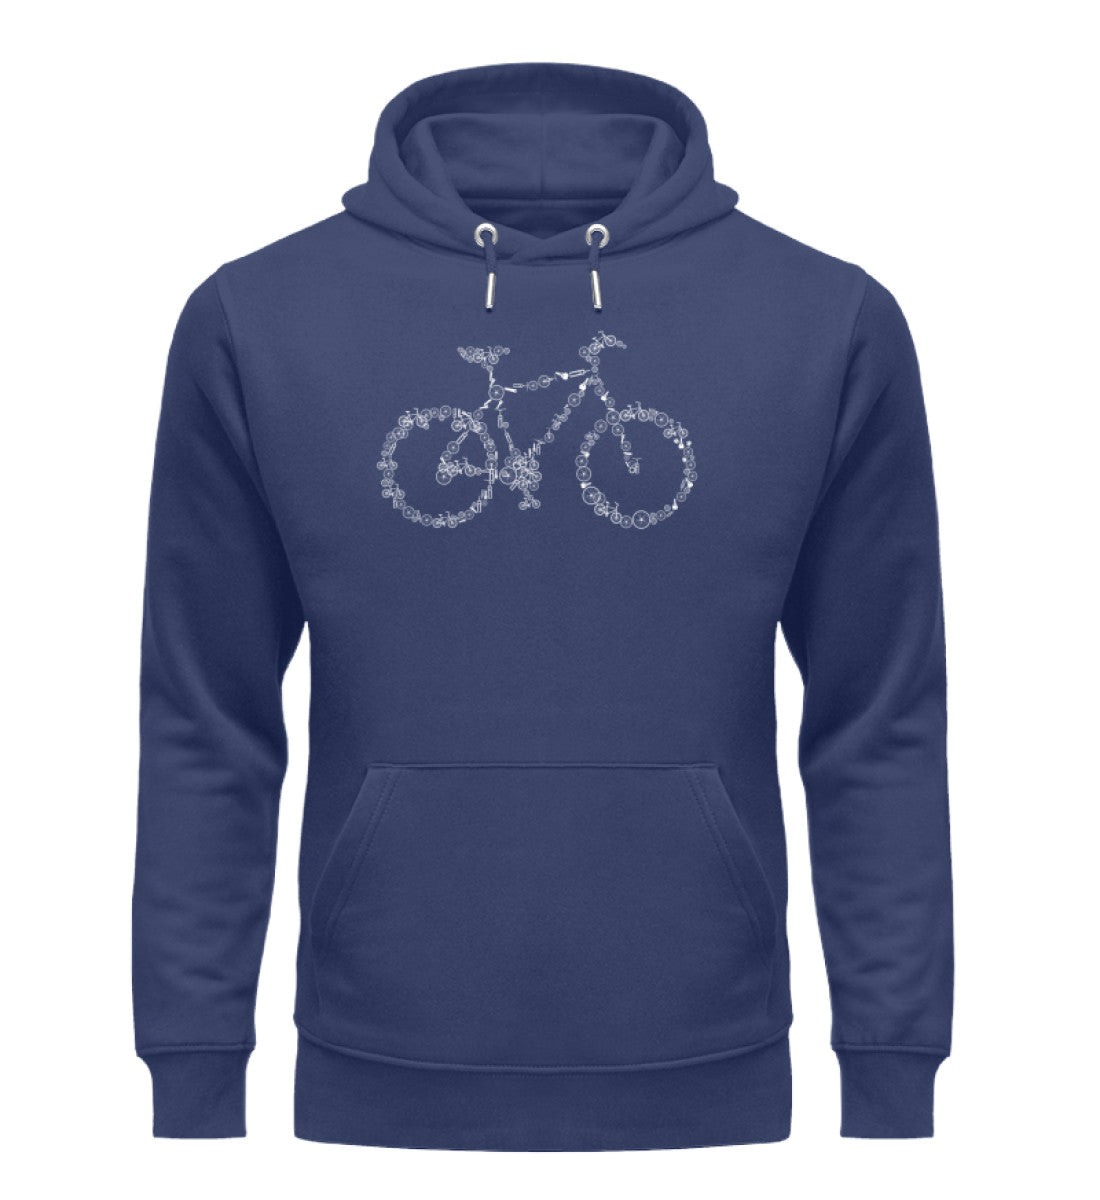 Fahrrad Kollektiv - Unisex Premium Organic Hoodie fahrrad mountainbike Navyblau